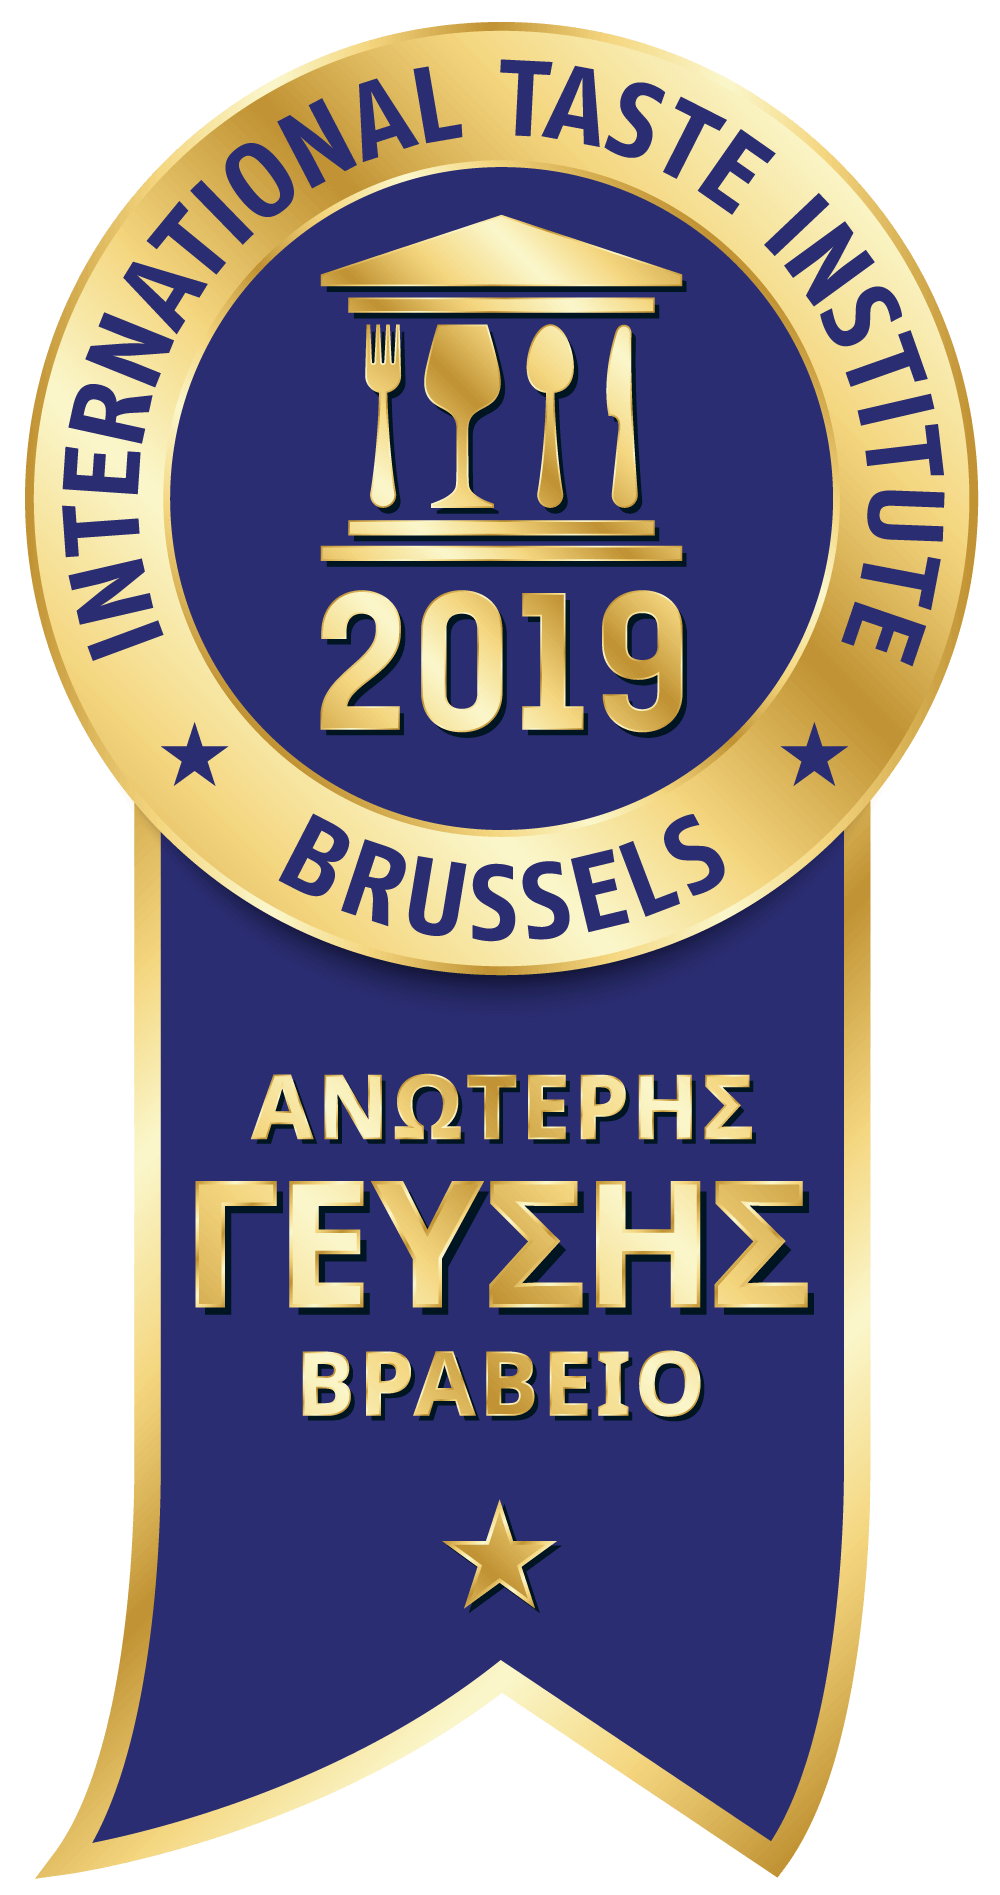 Βραβείο Ανώτερης Γεύσης ITI Brussels 1 αστέρι